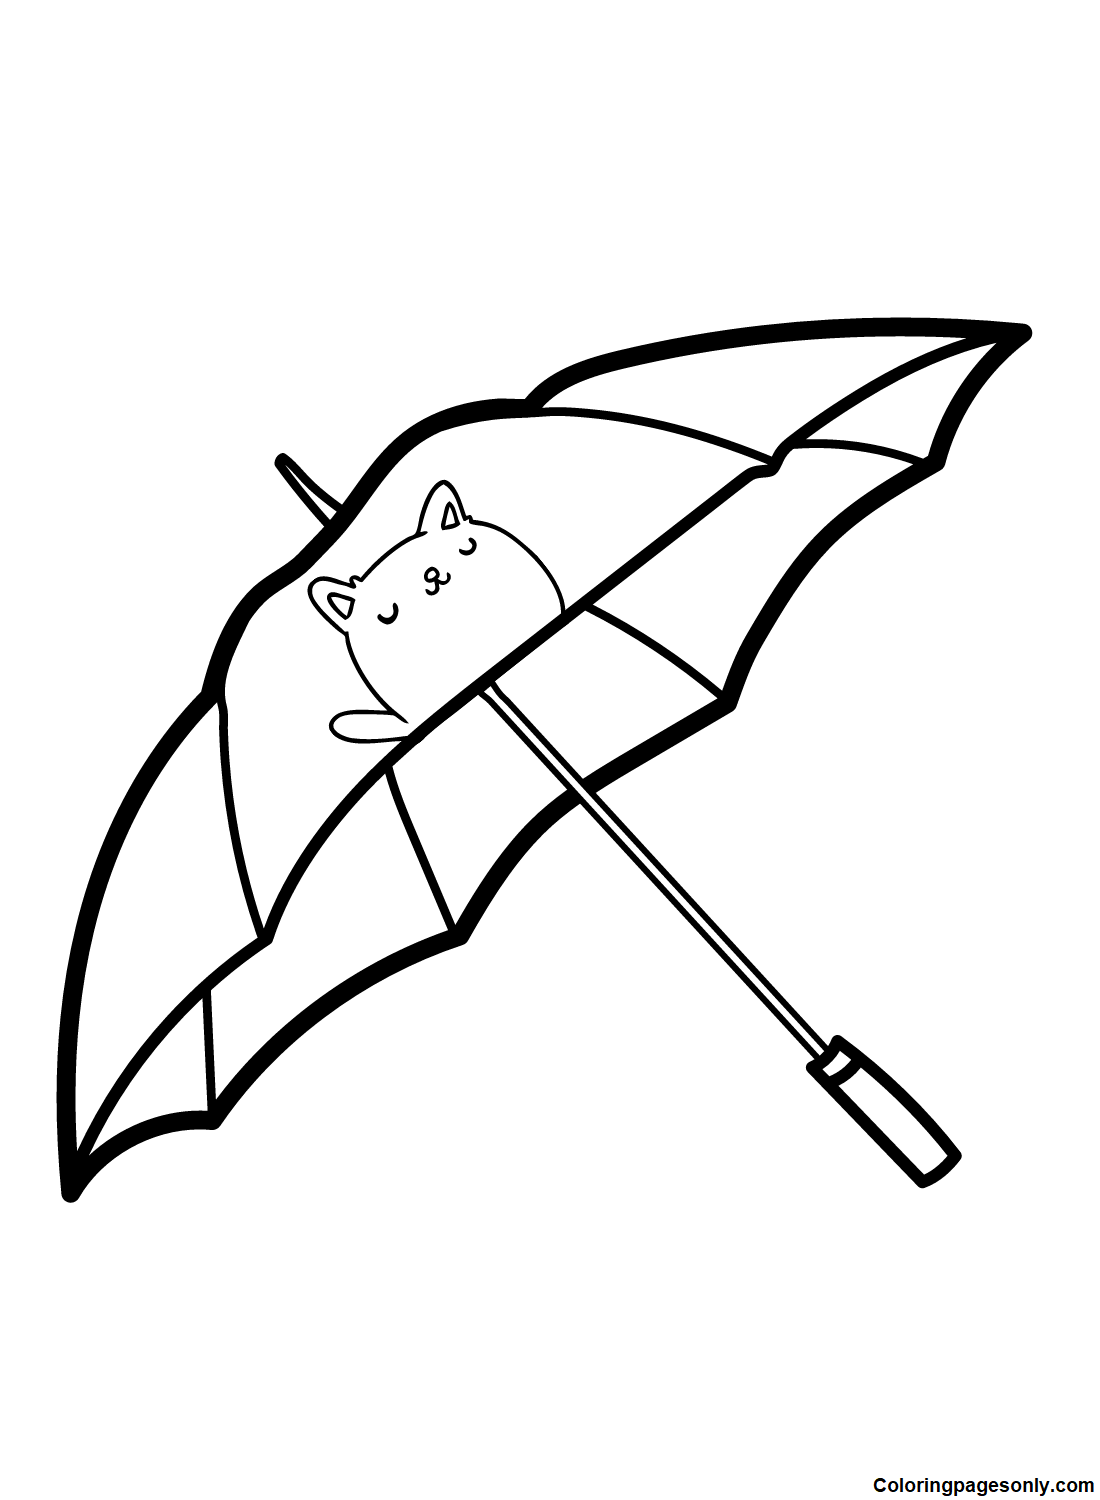 Desenho de guarda-chuva da Umbrella